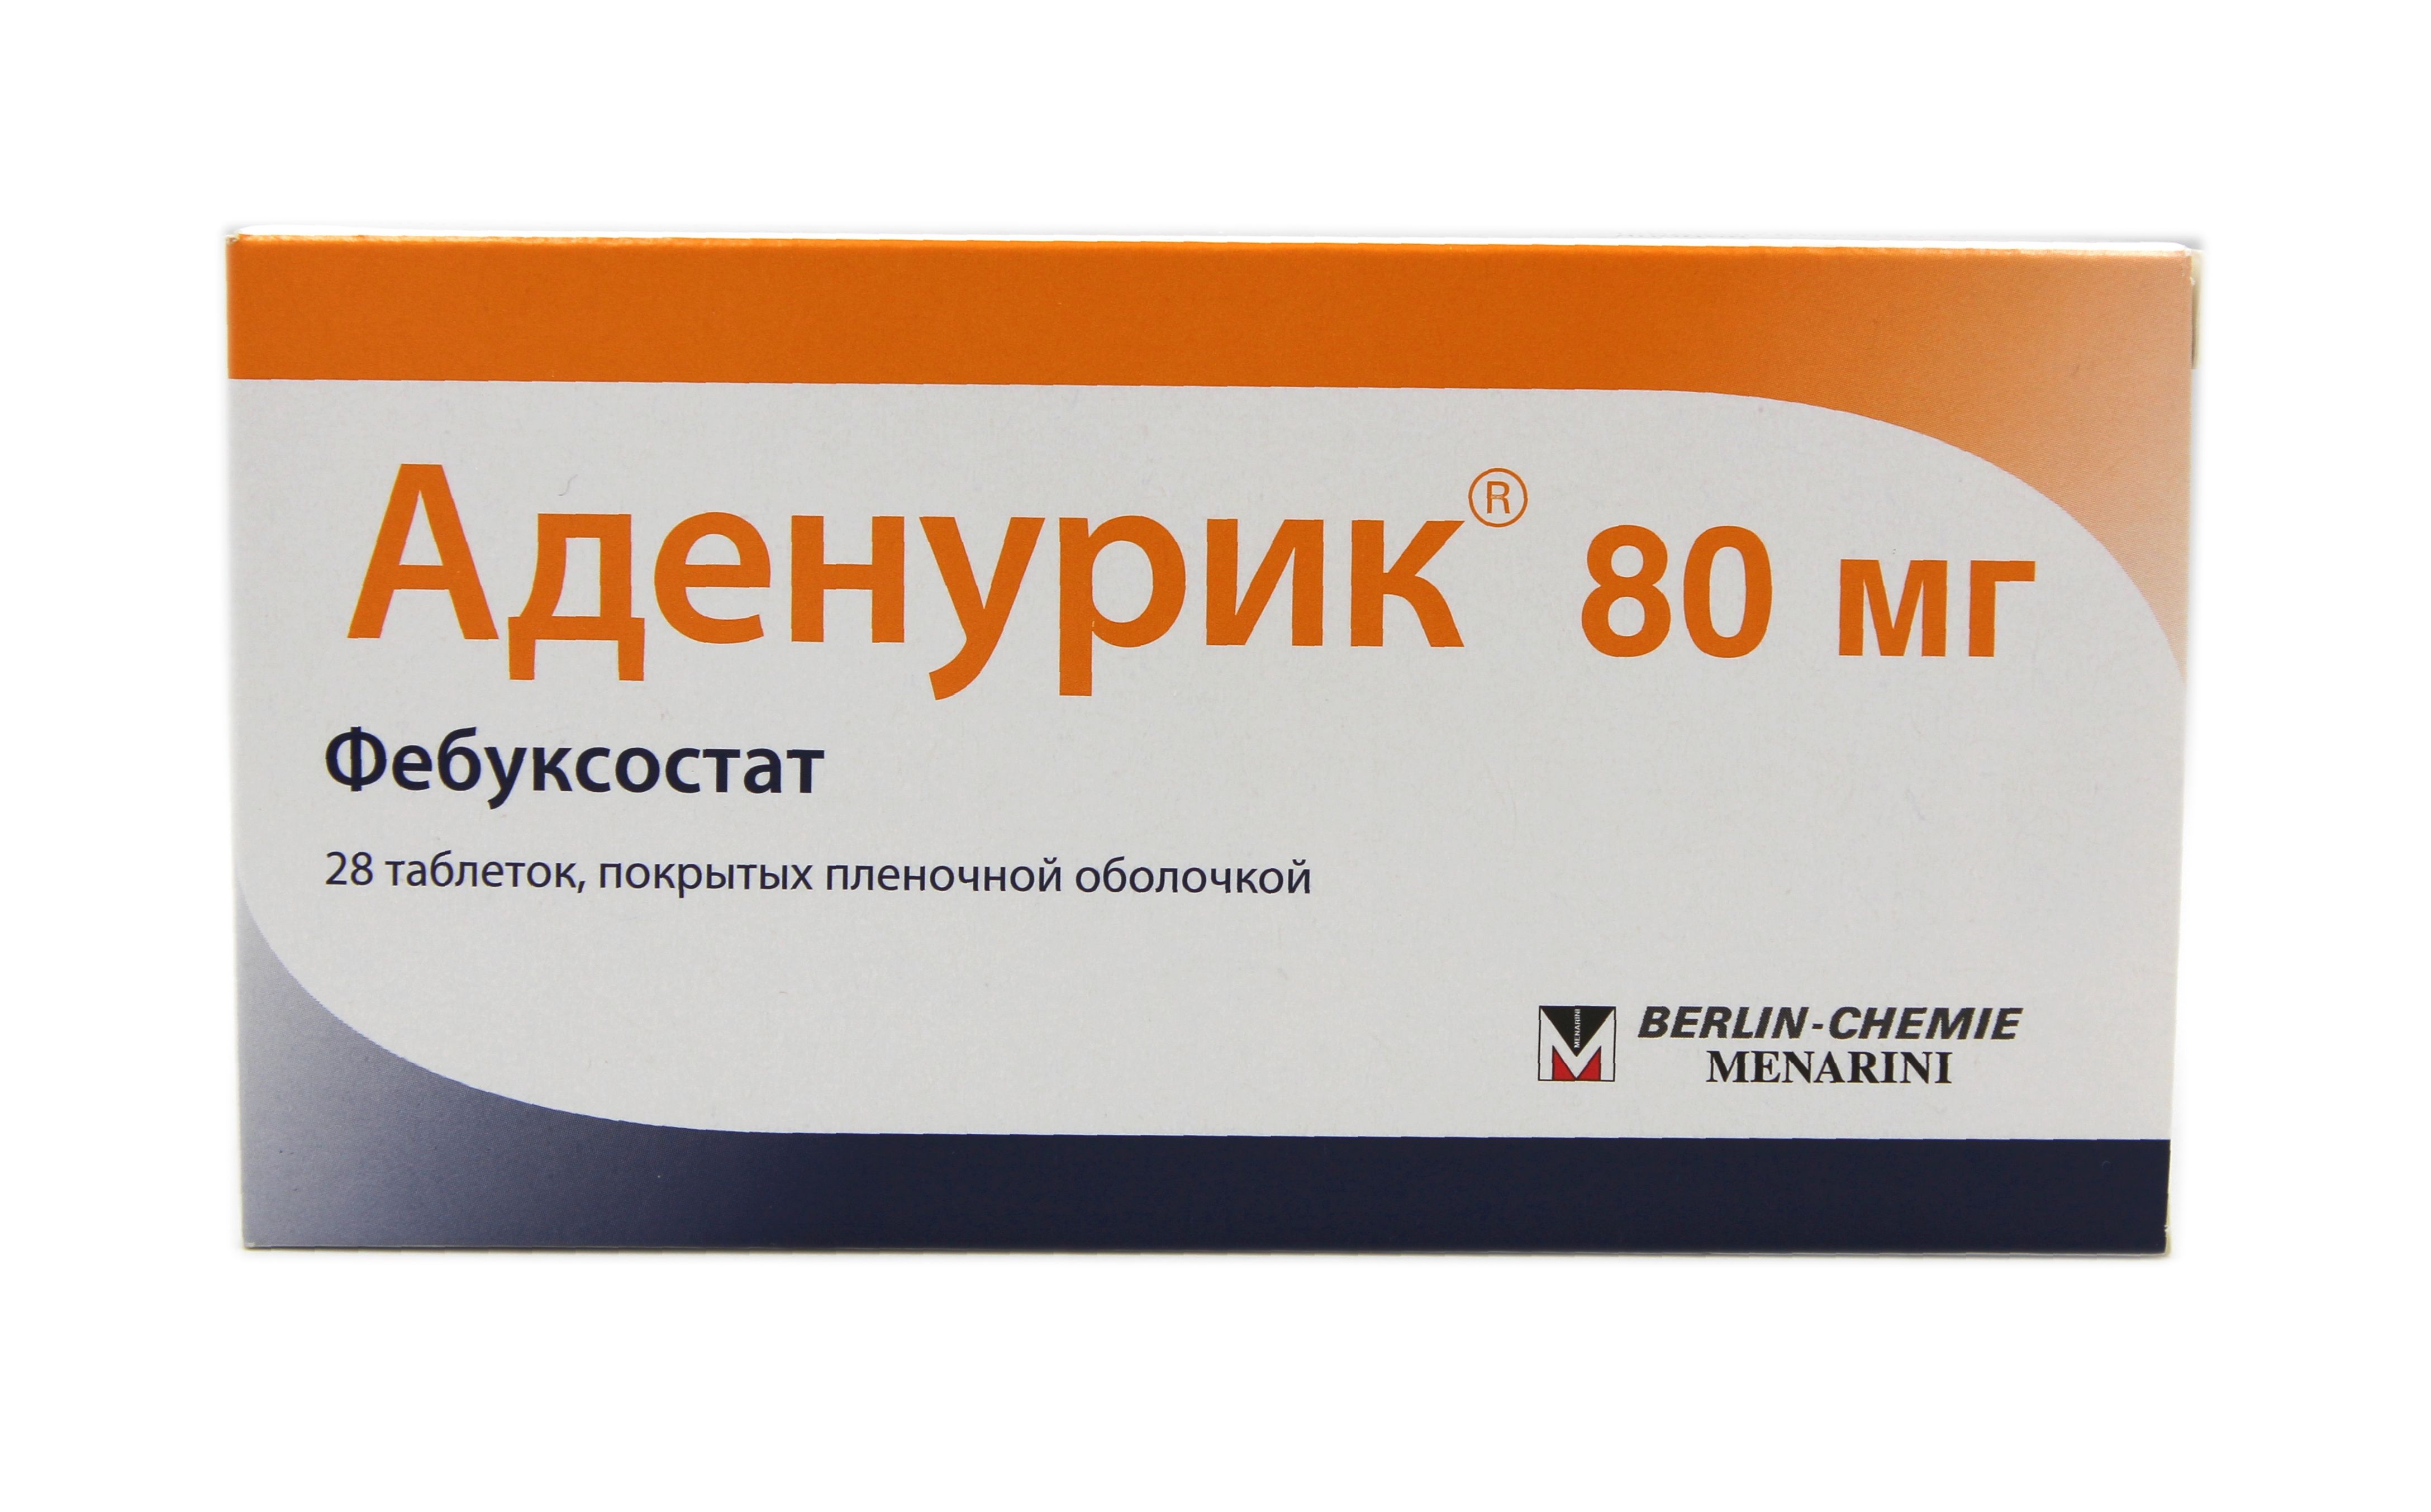 Таблетки фебуксостат инструкция по применению цена отзывы. Аденурик 120. Азурикс 80 мг. Аденурик 40 мг. Фебуксостат 120 мг.